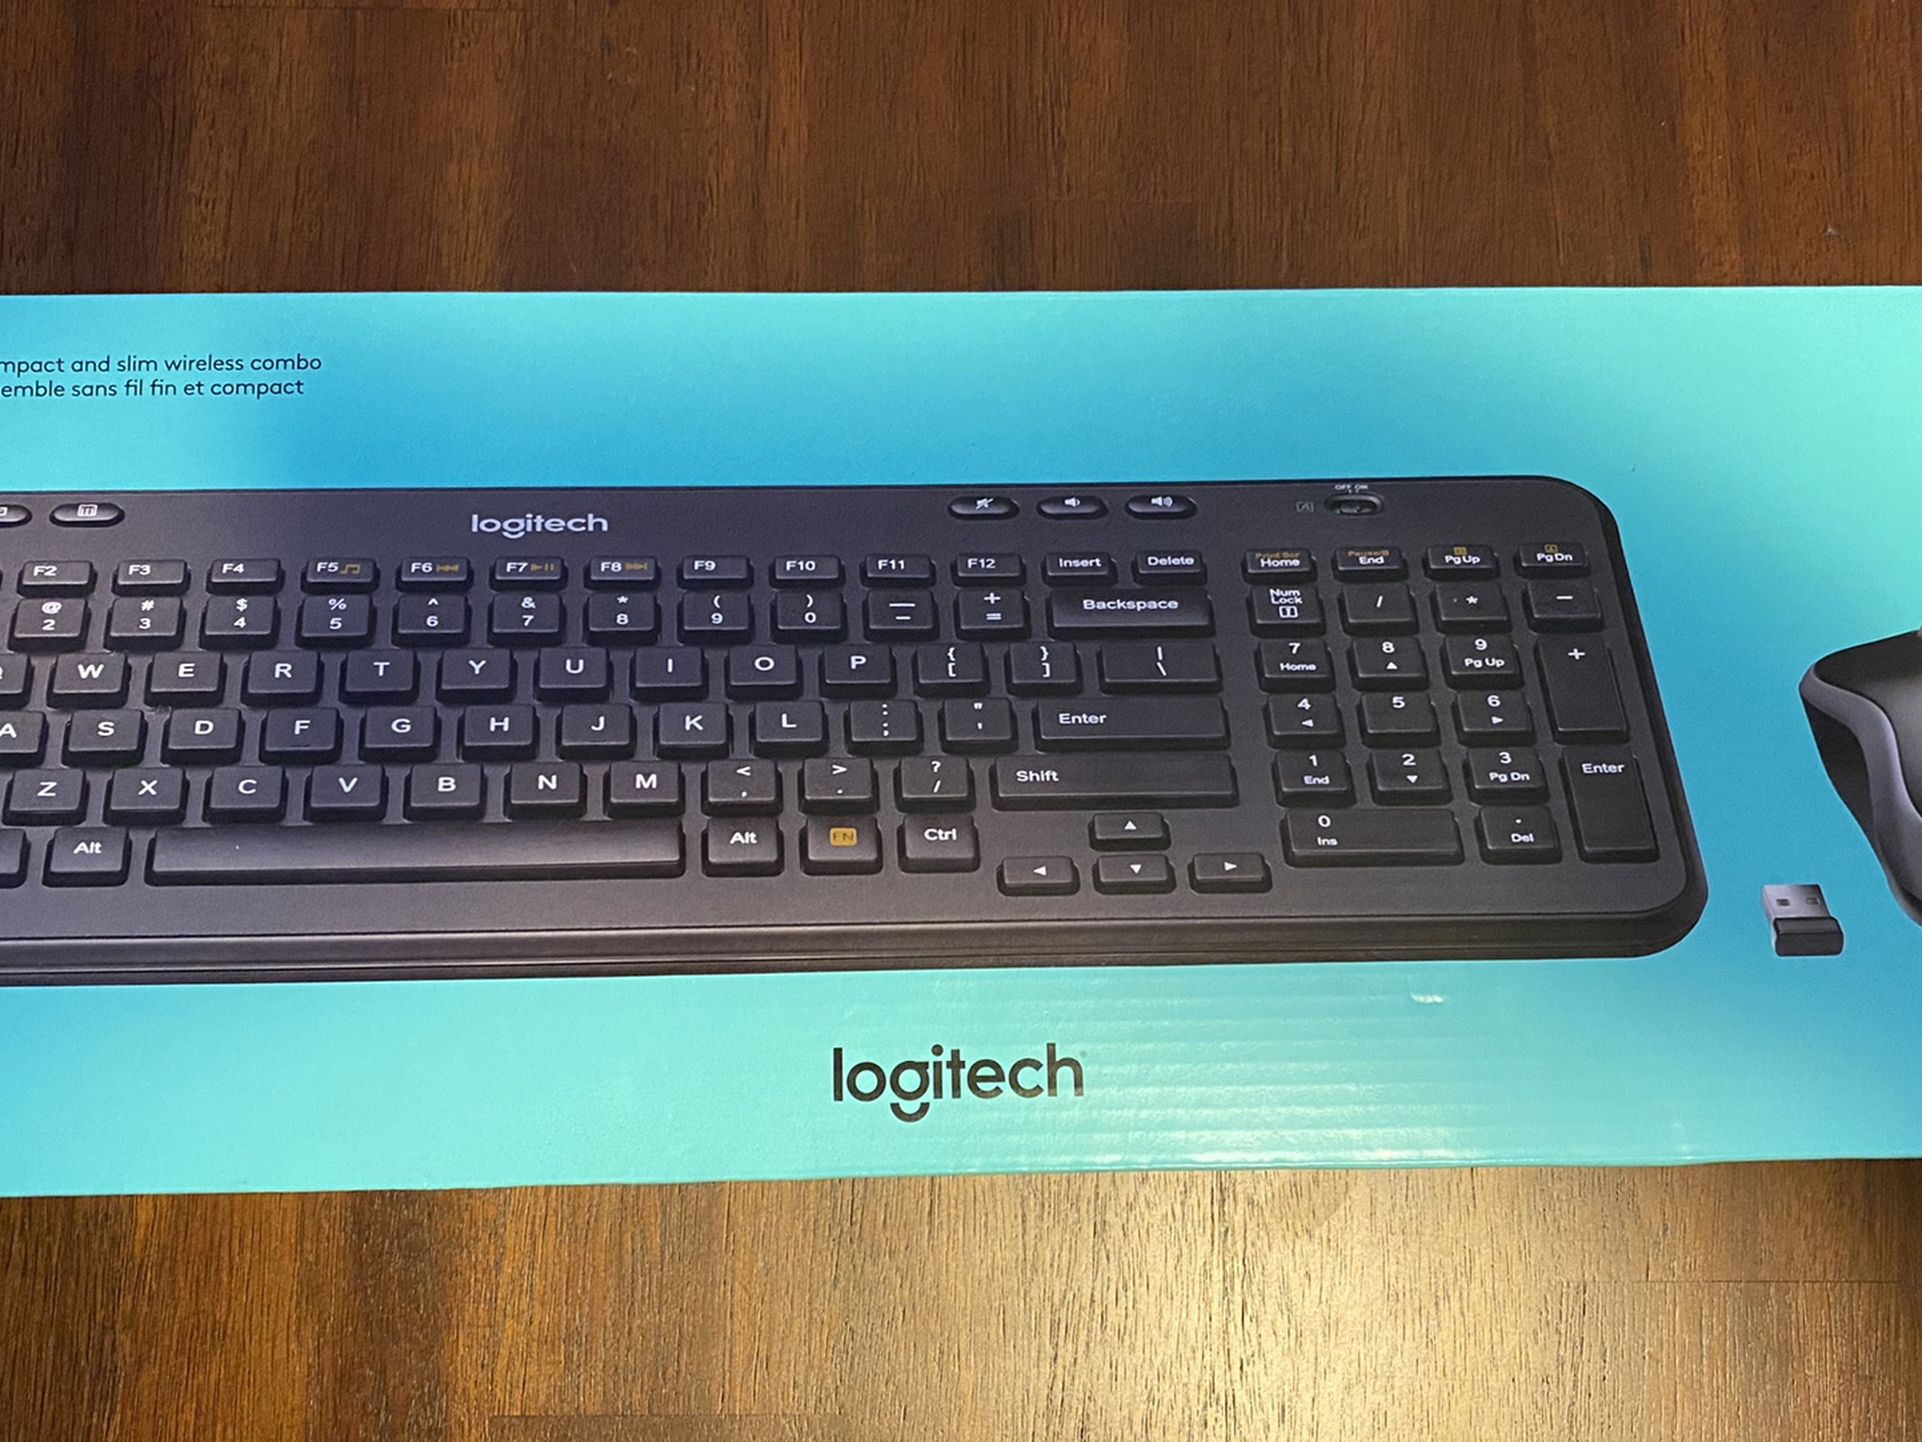 Logitech Keyboard & Mouse Combo